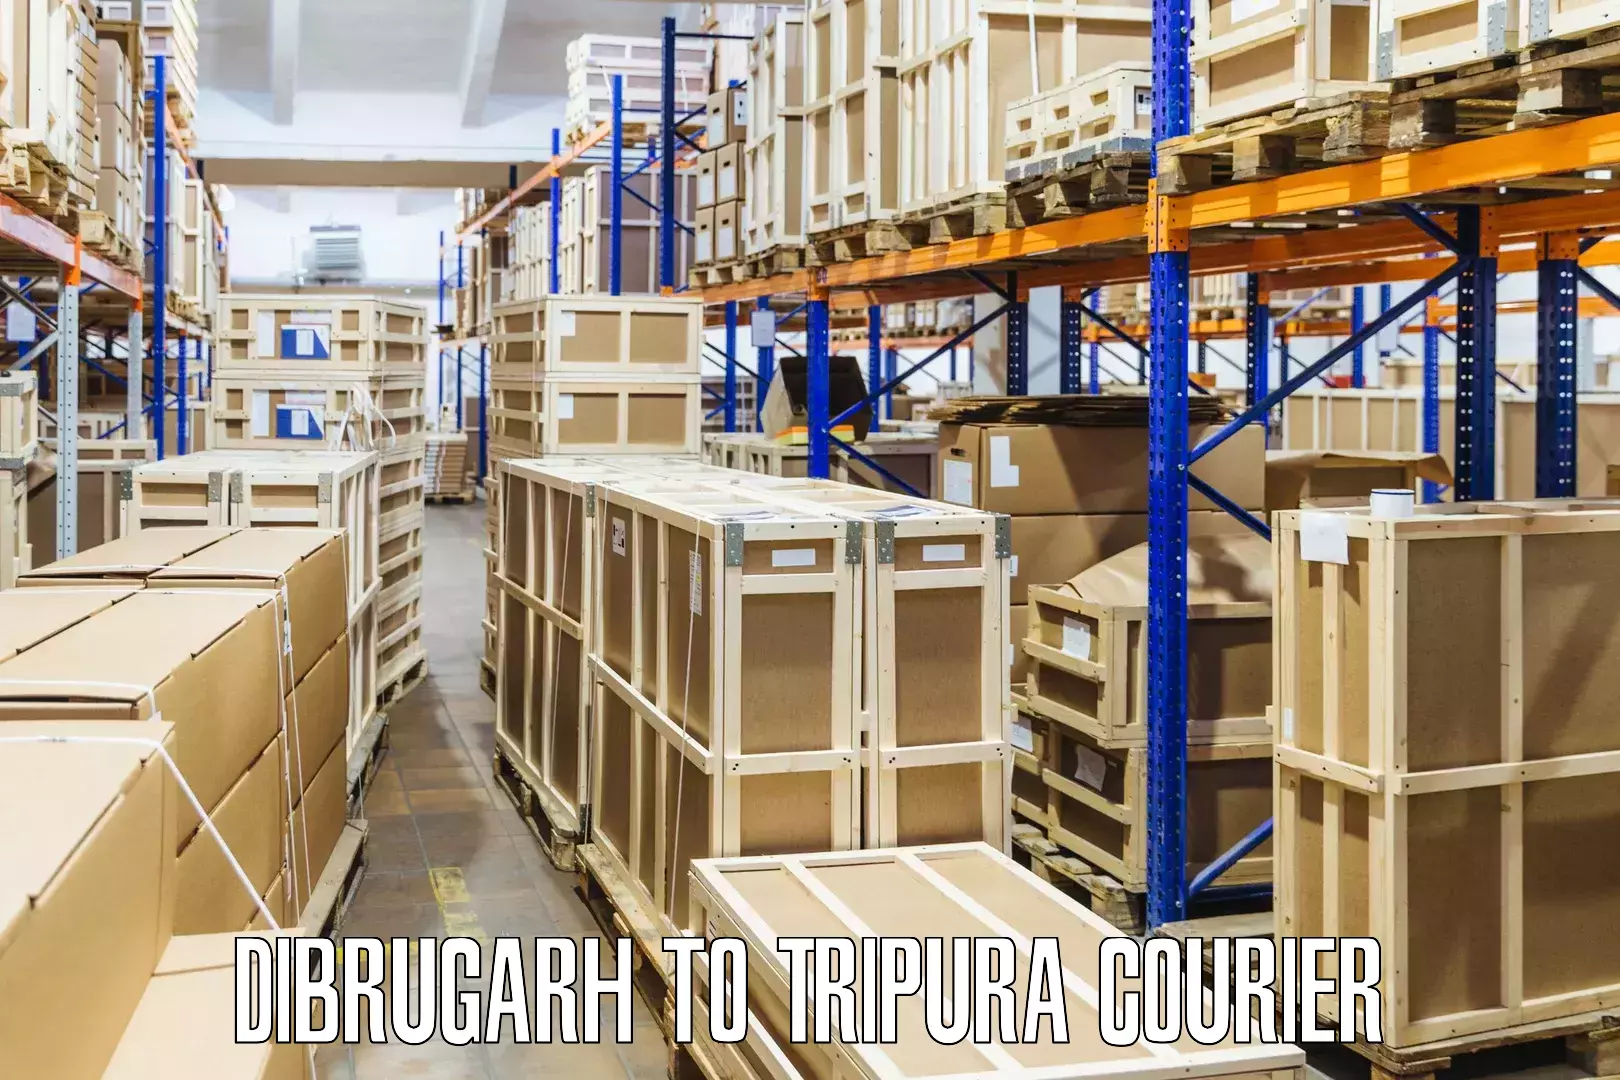 Secure packaging in Dibrugarh to Agartala